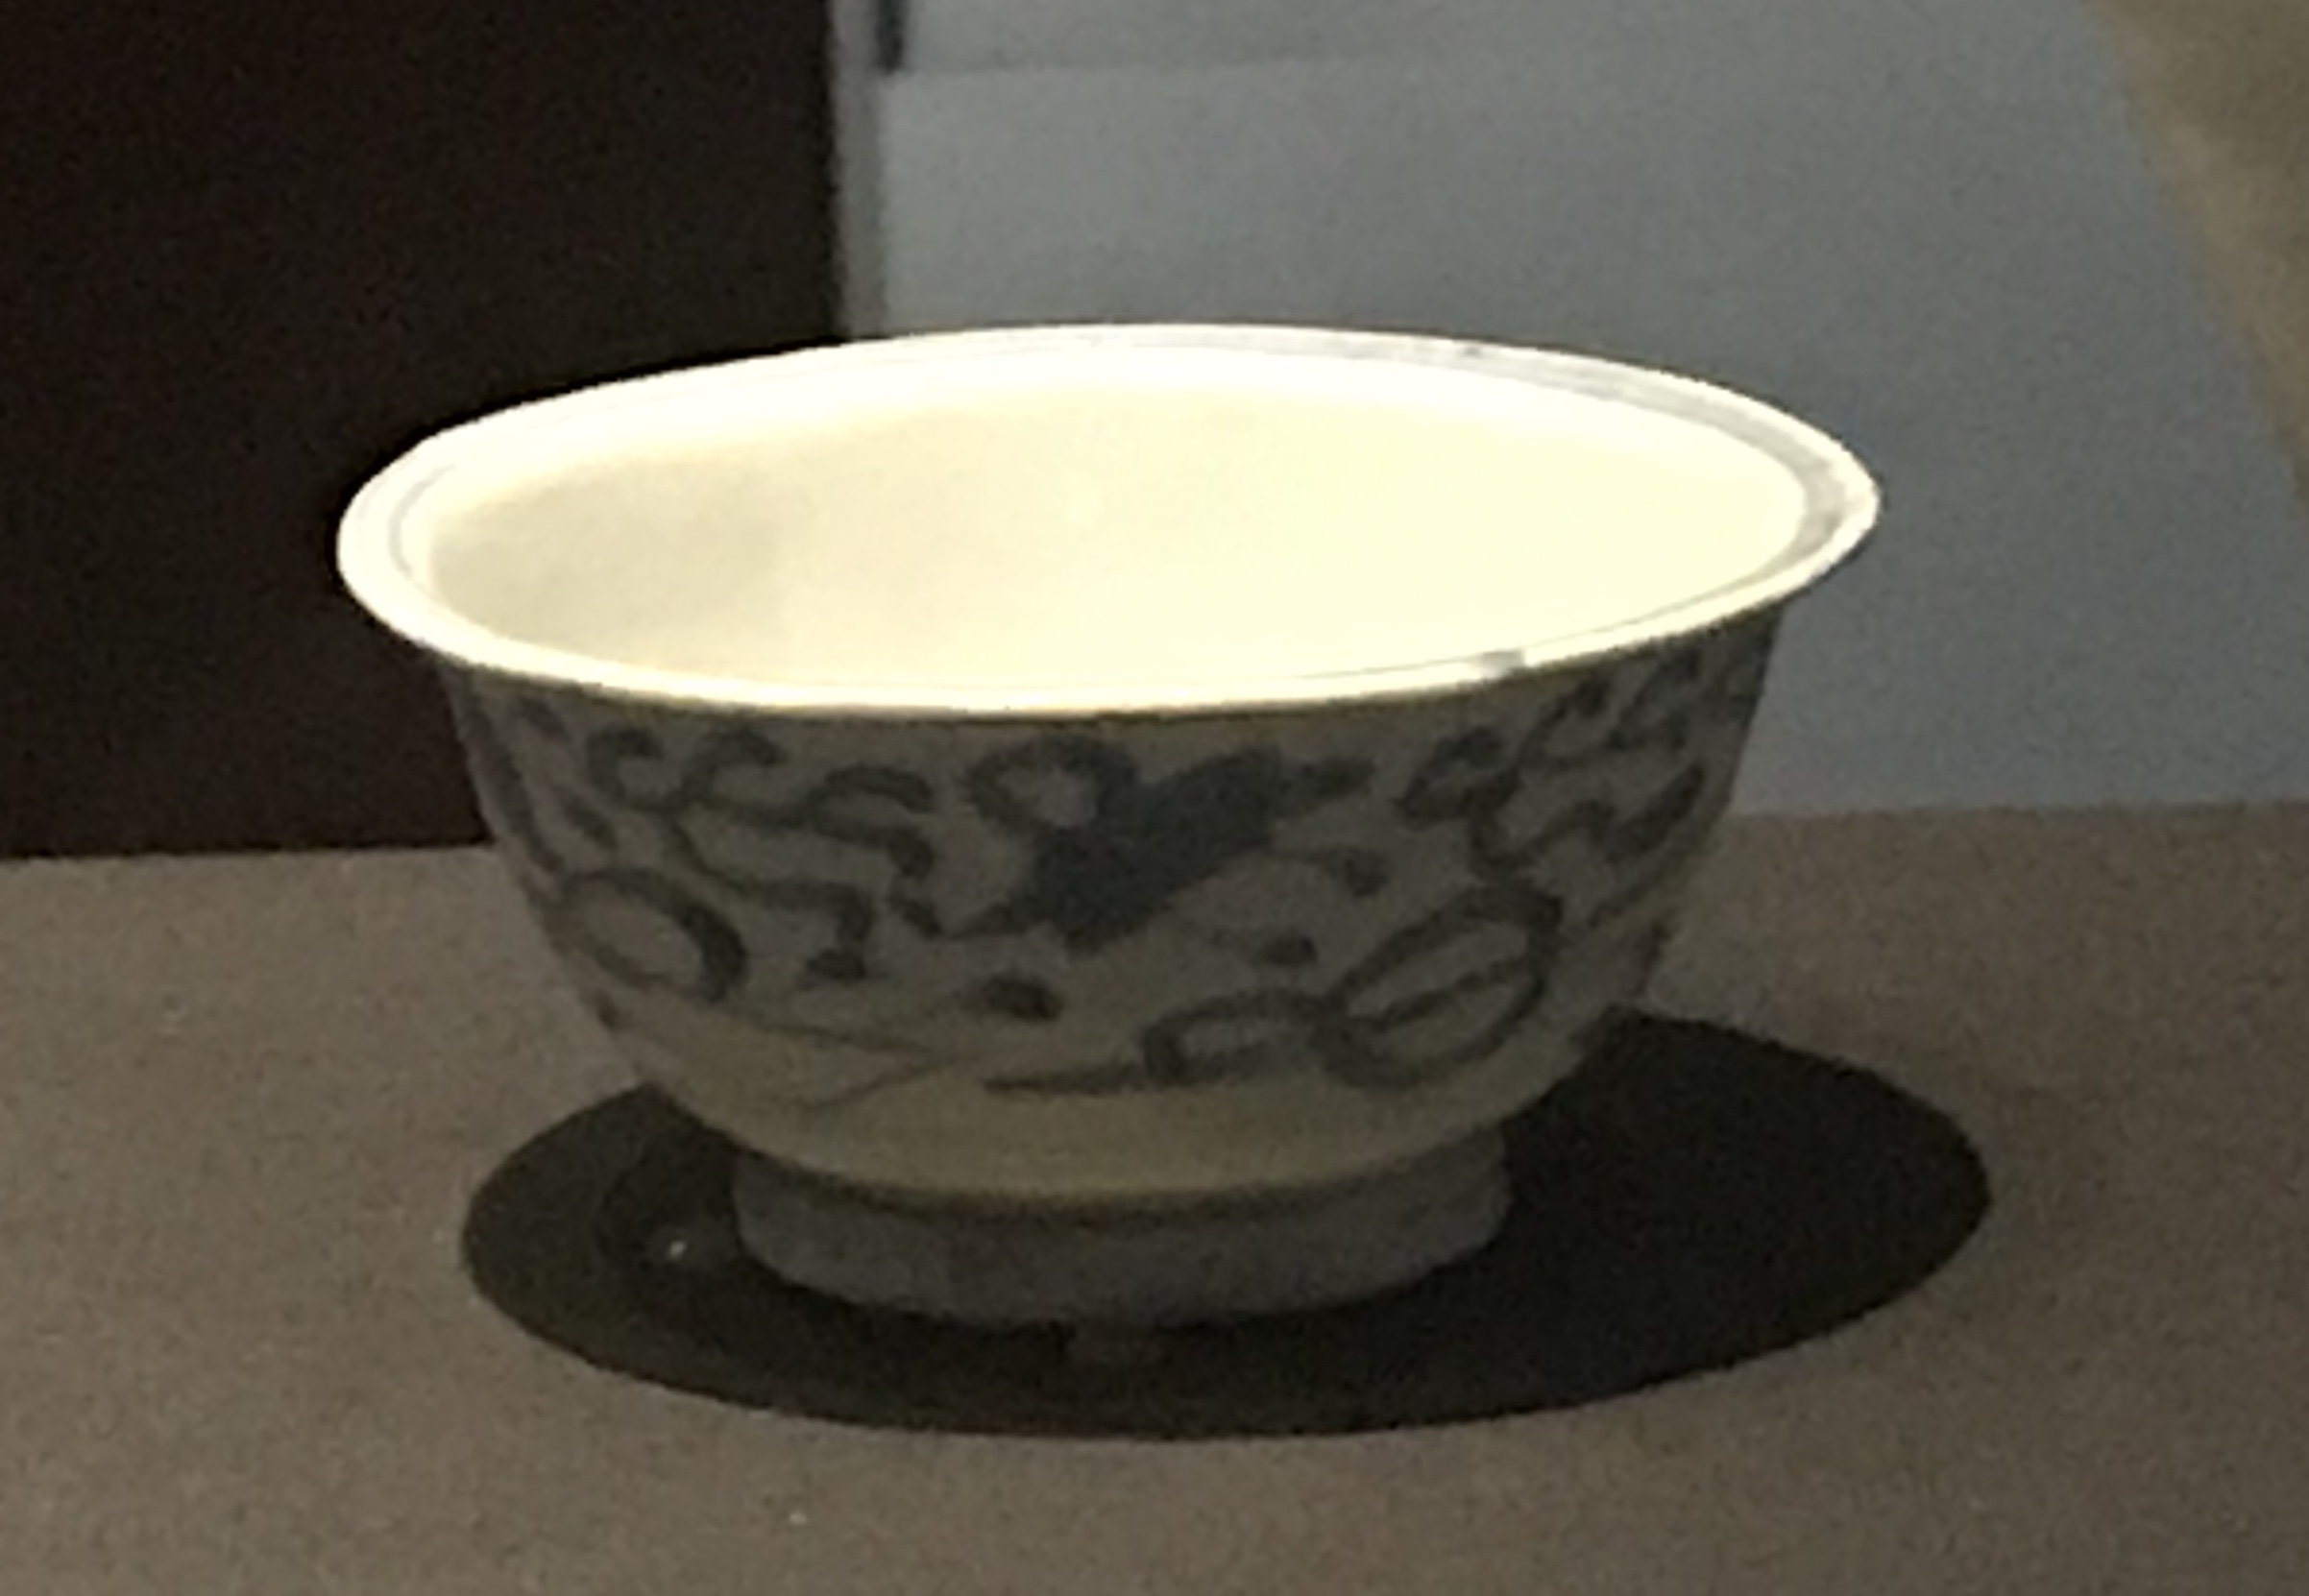  青花雑宝紋磁碗-明清時代-常設展F３-成都博物館